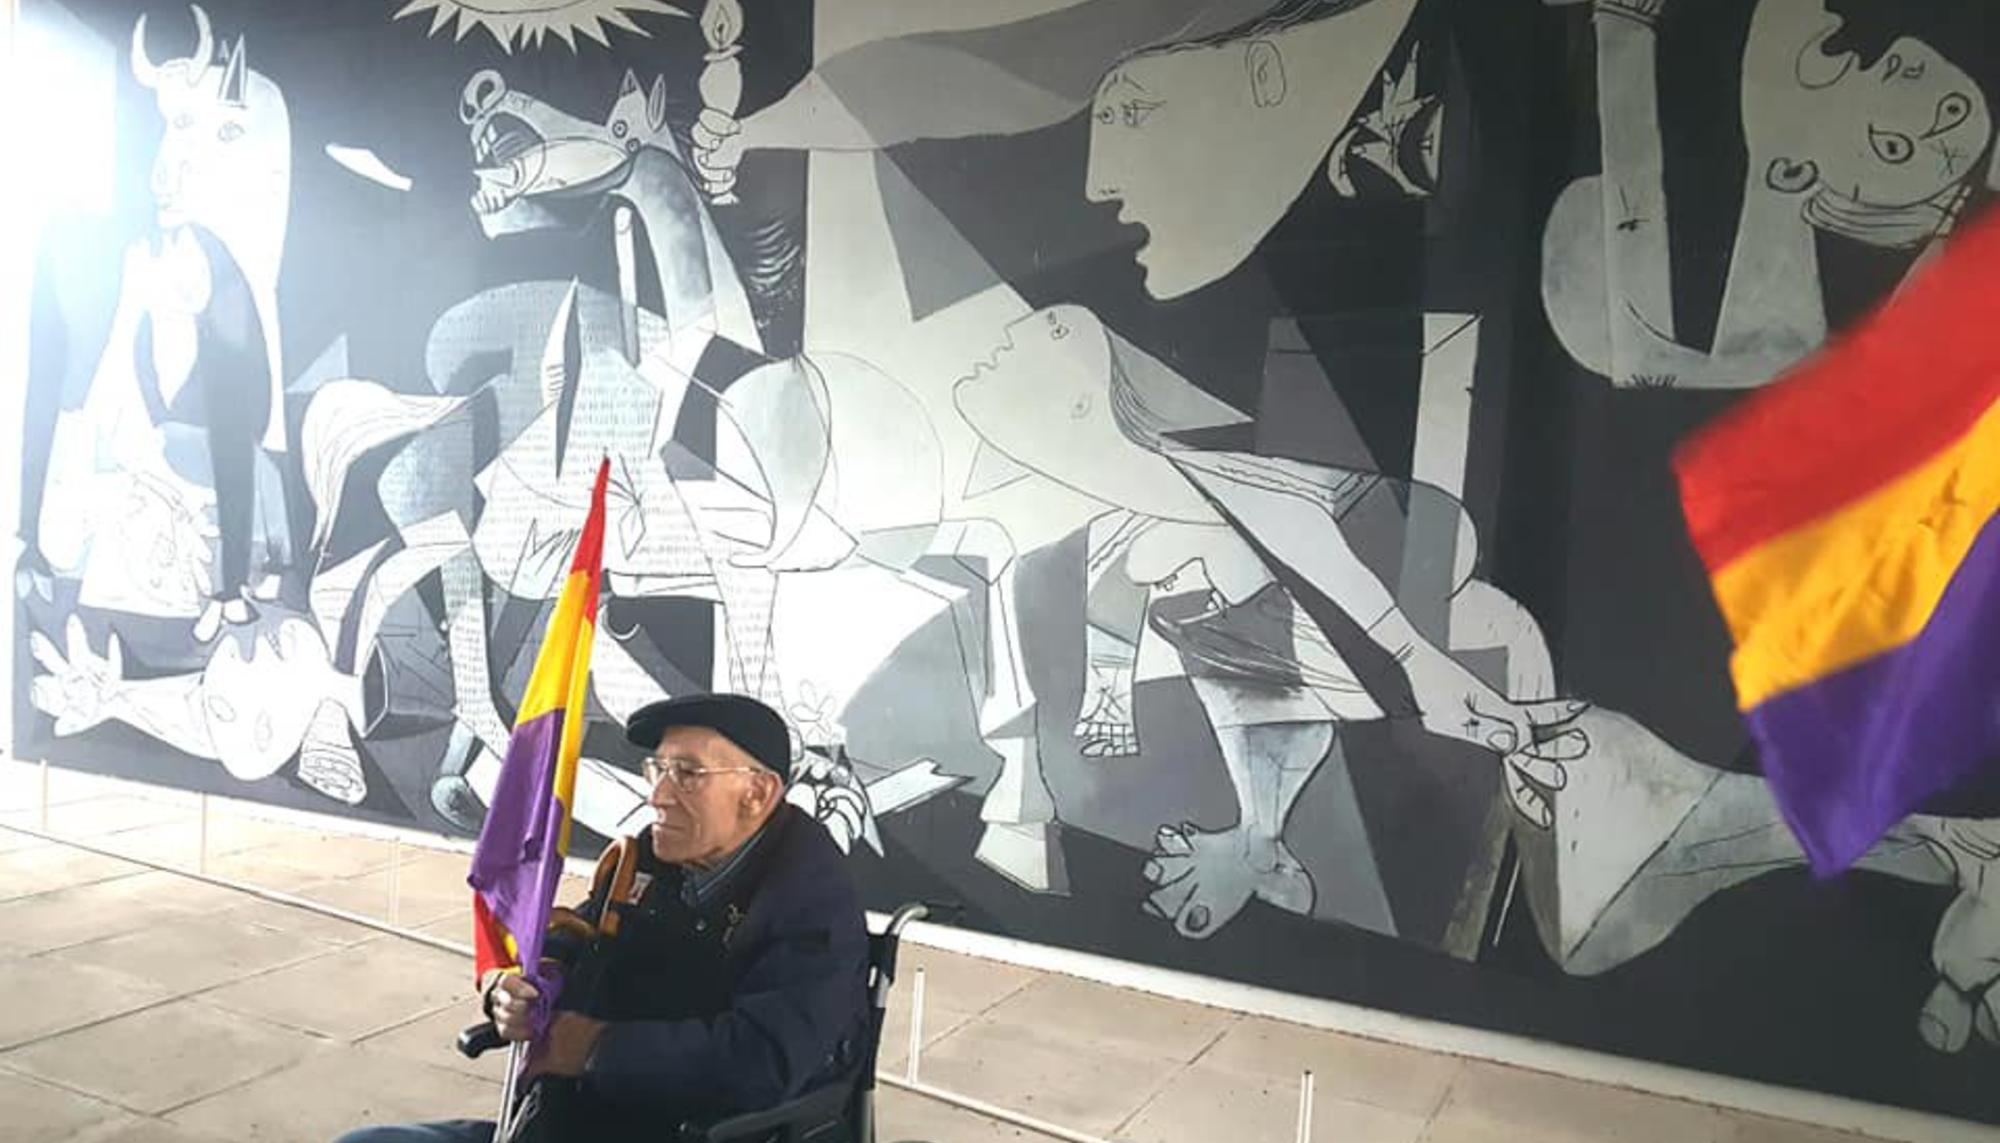 Martí Bielsa, ante el Guernica de Picasso